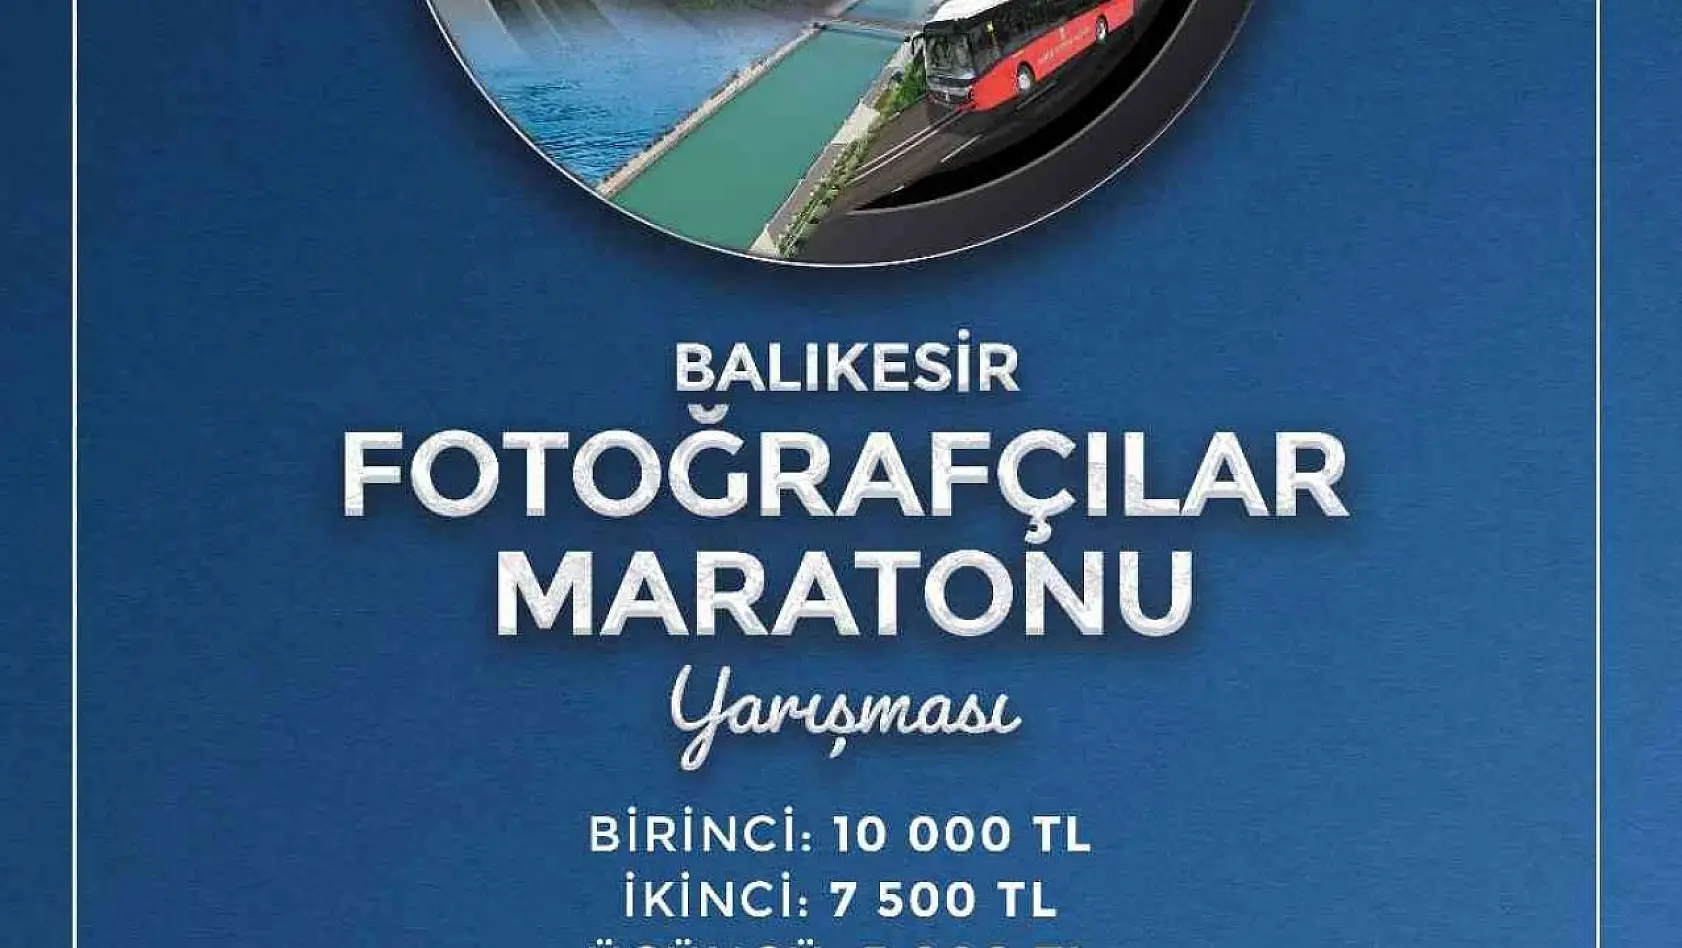 'Balıkesir Fotoğrafçılar Maratonu Yarışması' başlıyor